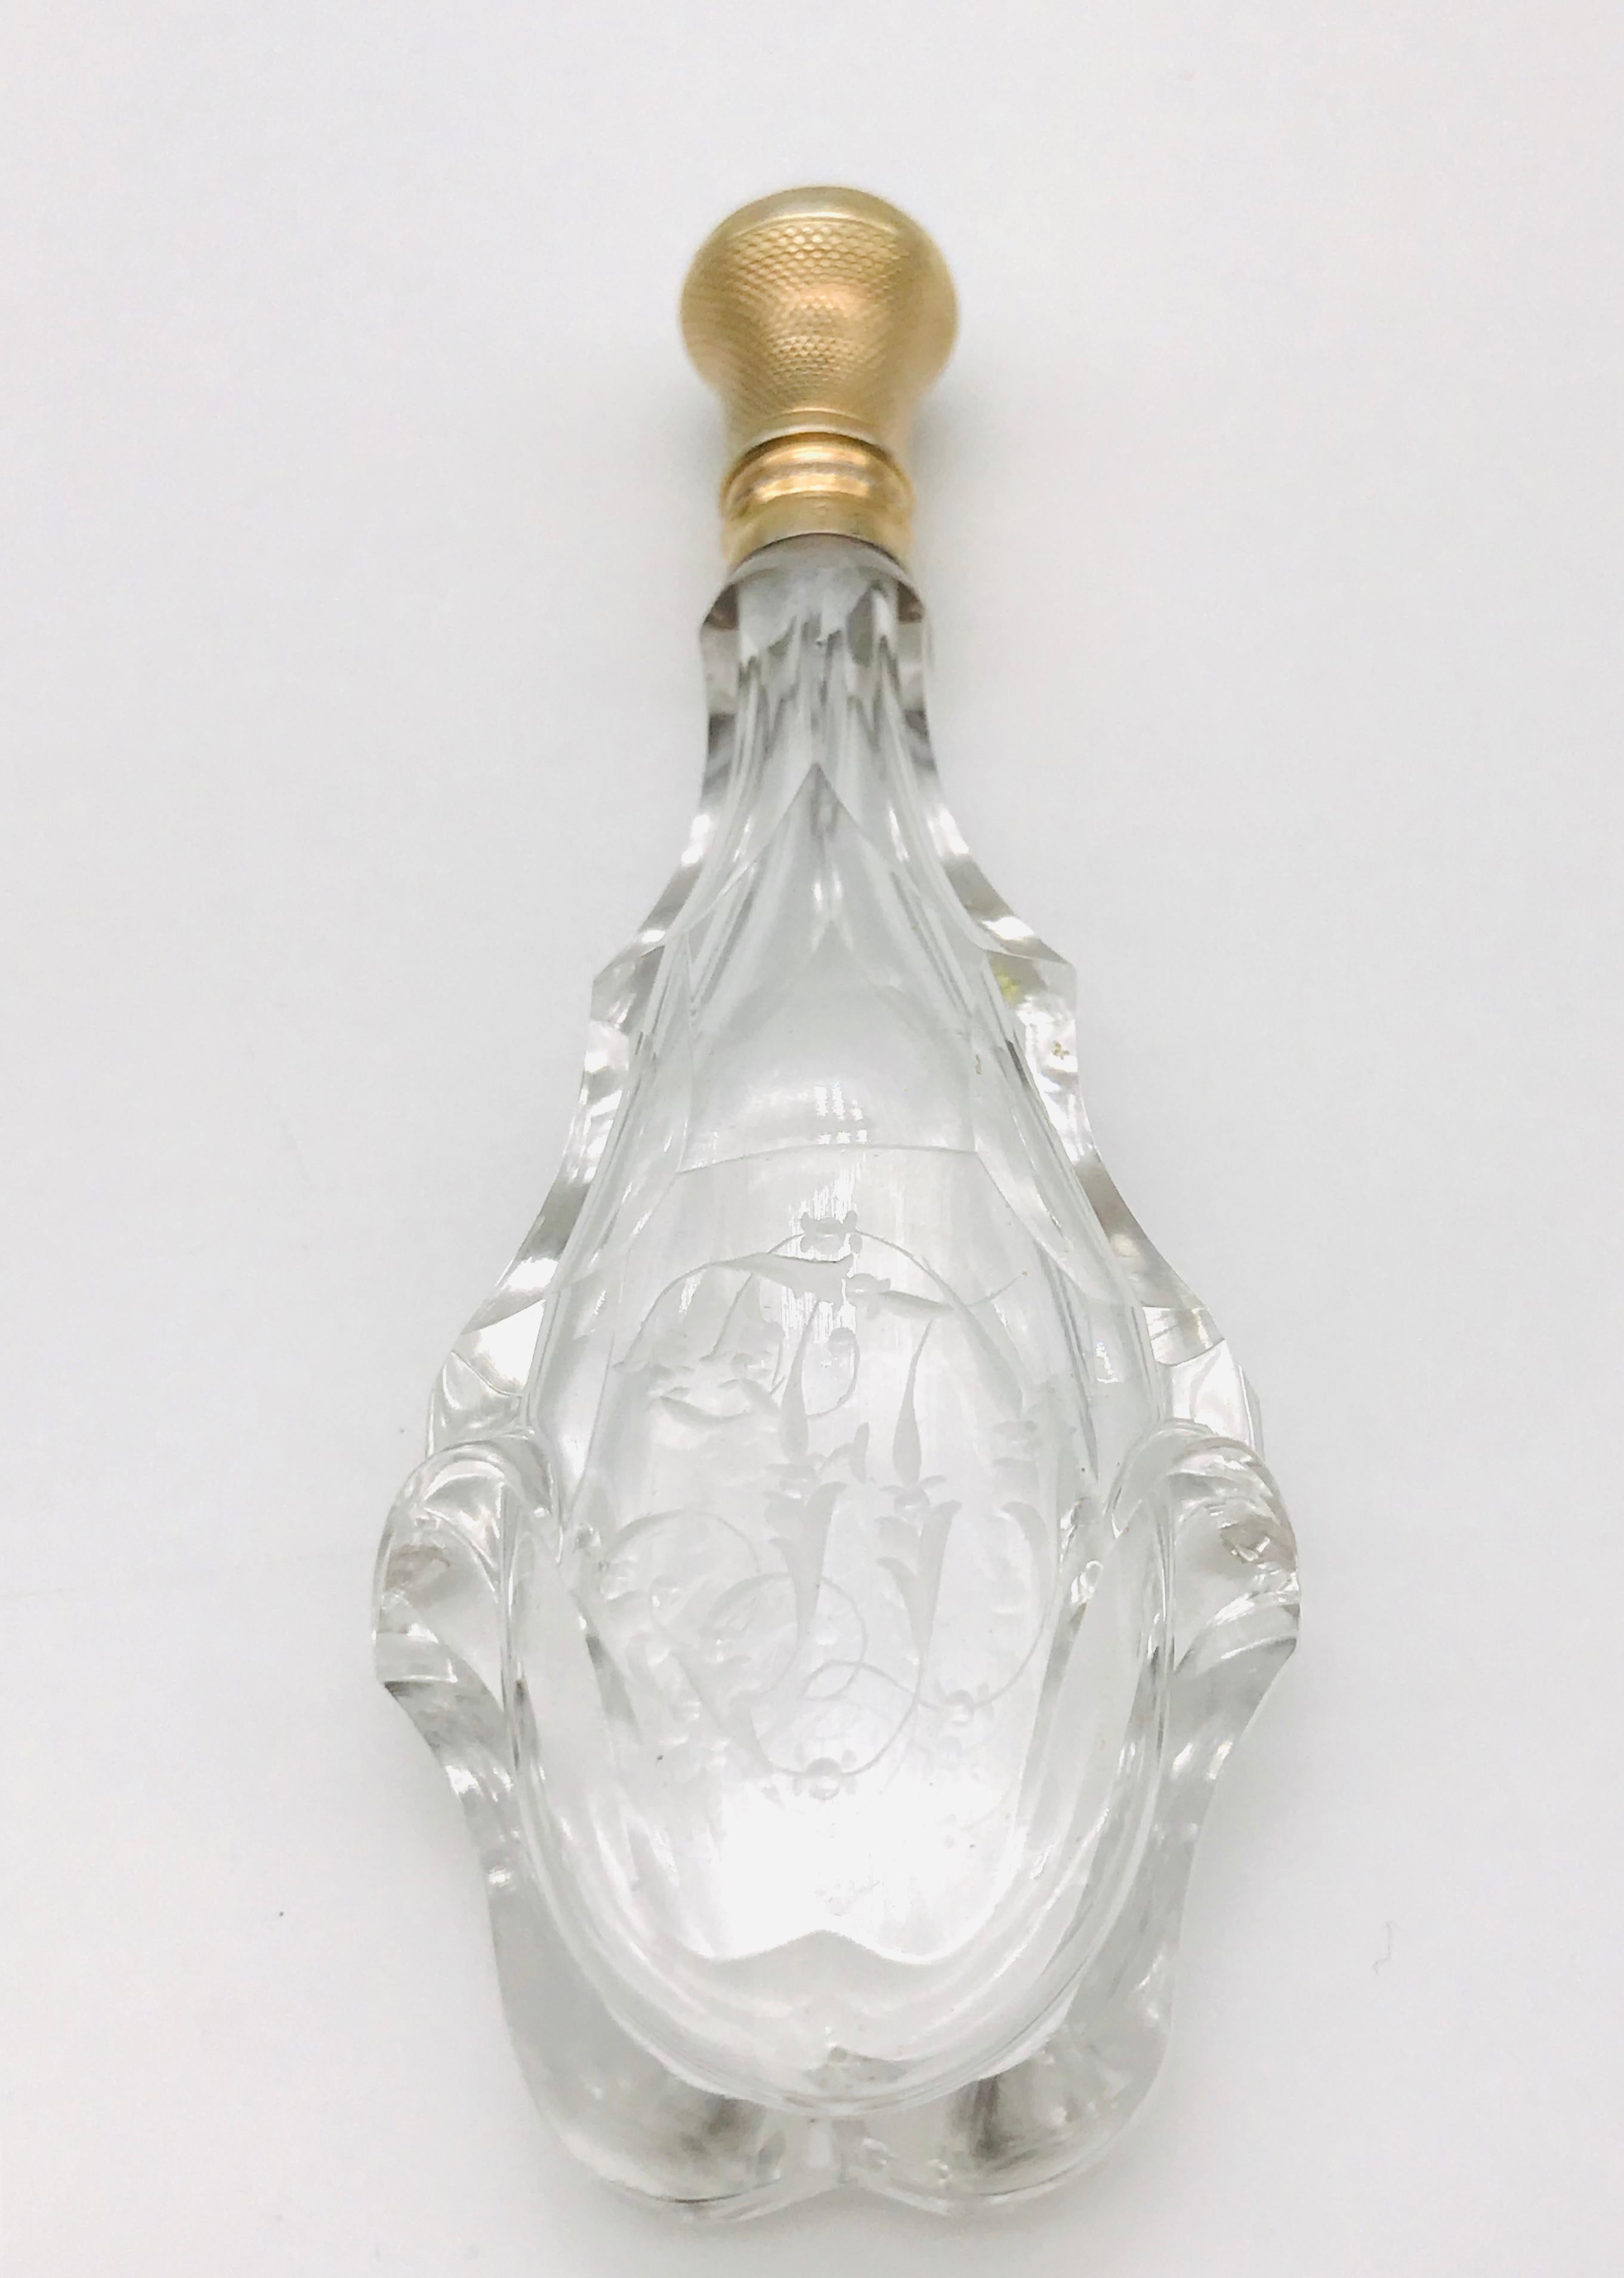 Bienvenue dans le monde enchanteur des flacons de parfum de collection. Cette bouteille en cristal, datant de l'époque de Charle X (1830), est une véritable merveille. Son design exquis et sa fabrication méticuleuse en font une pièce exceptionnelle